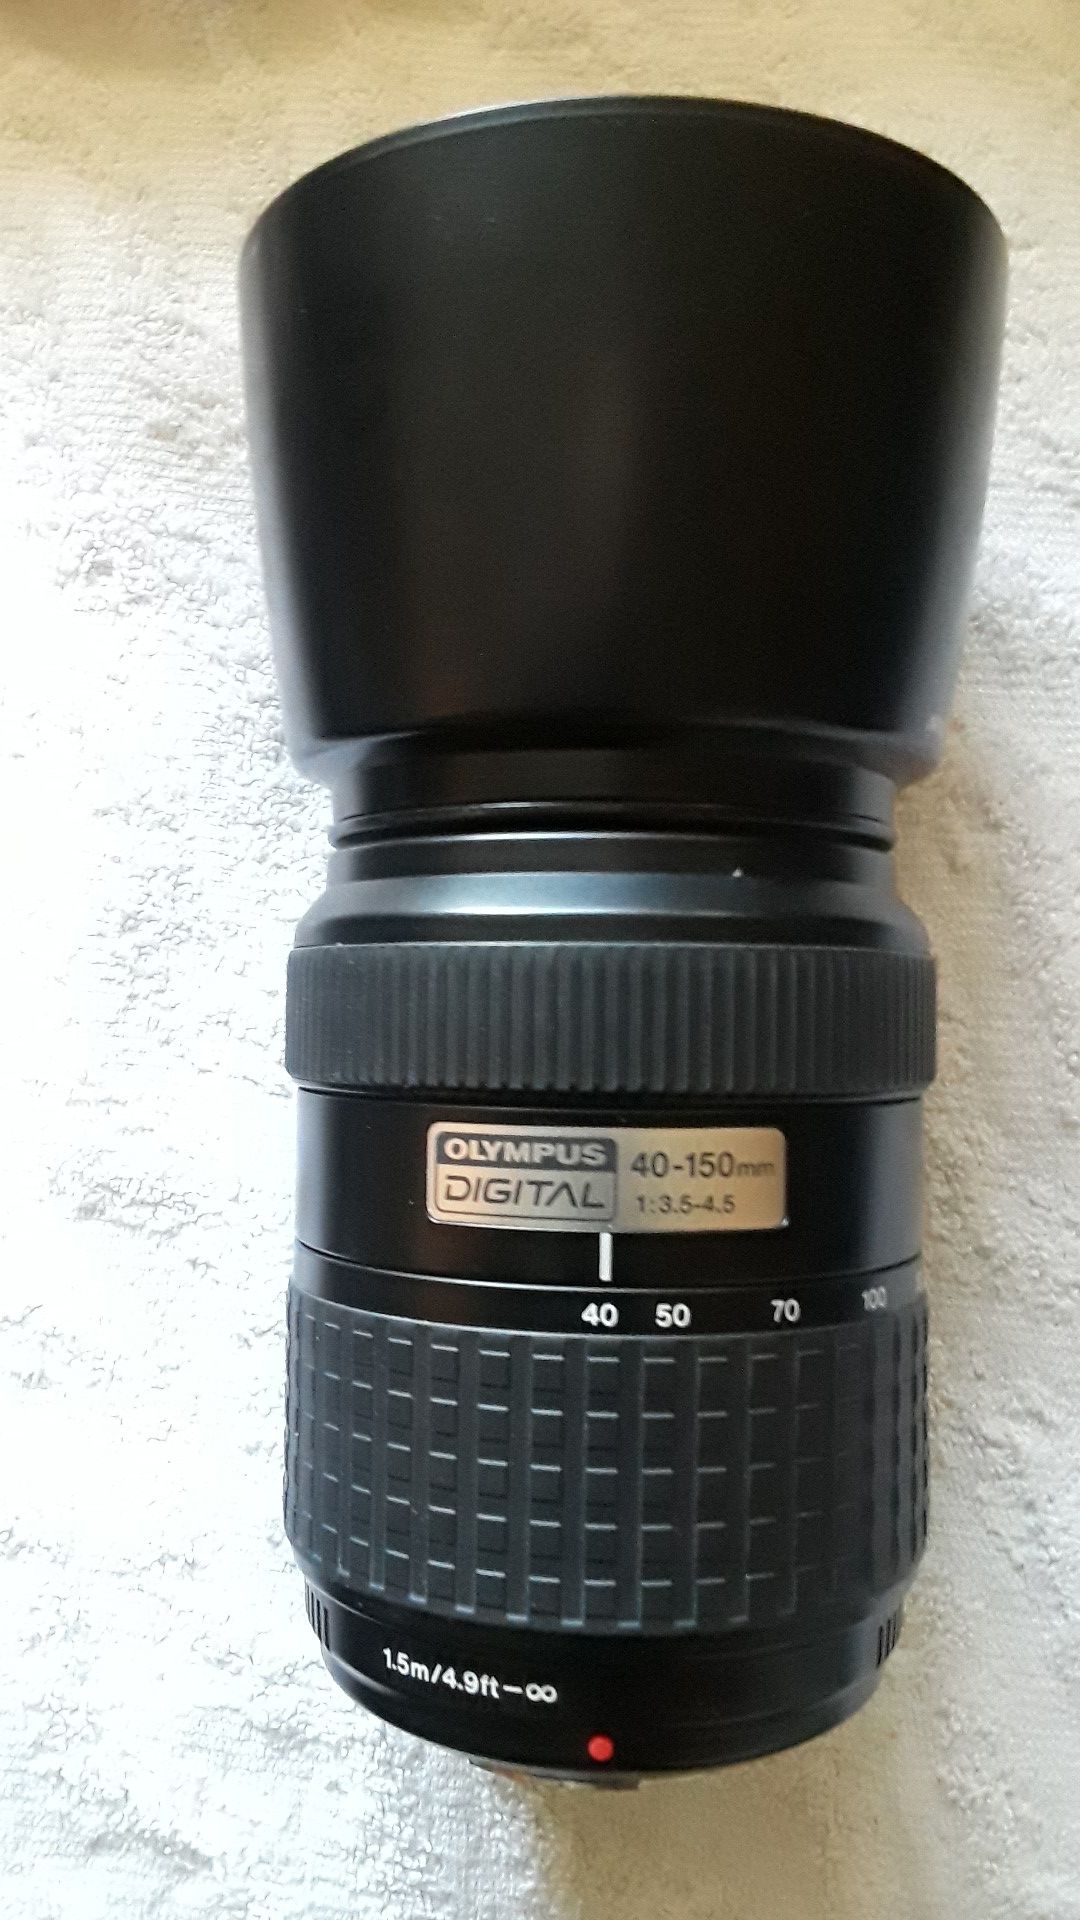 Olympus Digital 40-150mm zoom lens